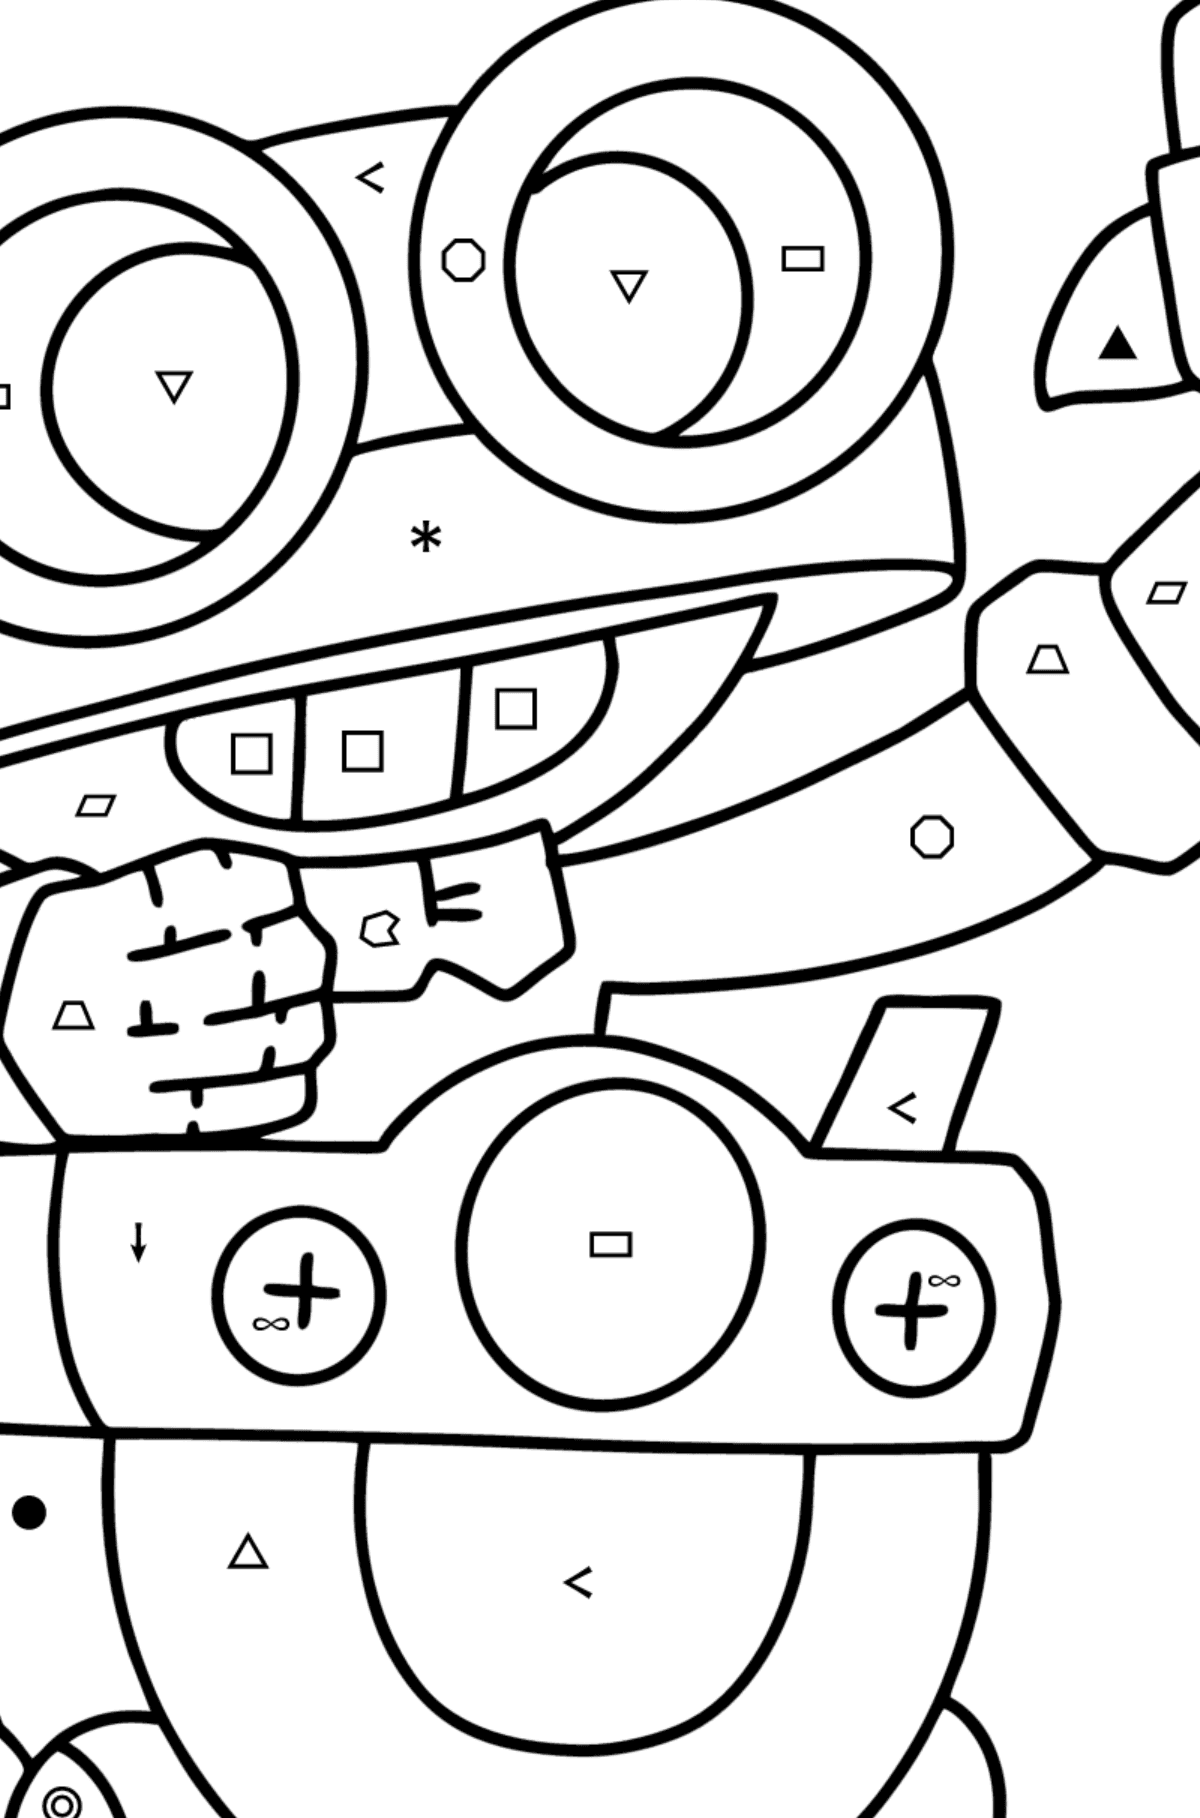 Tegning til fargelegging Brawl Stars Carl - Fargelegge etter symboler og geometriske former for barn